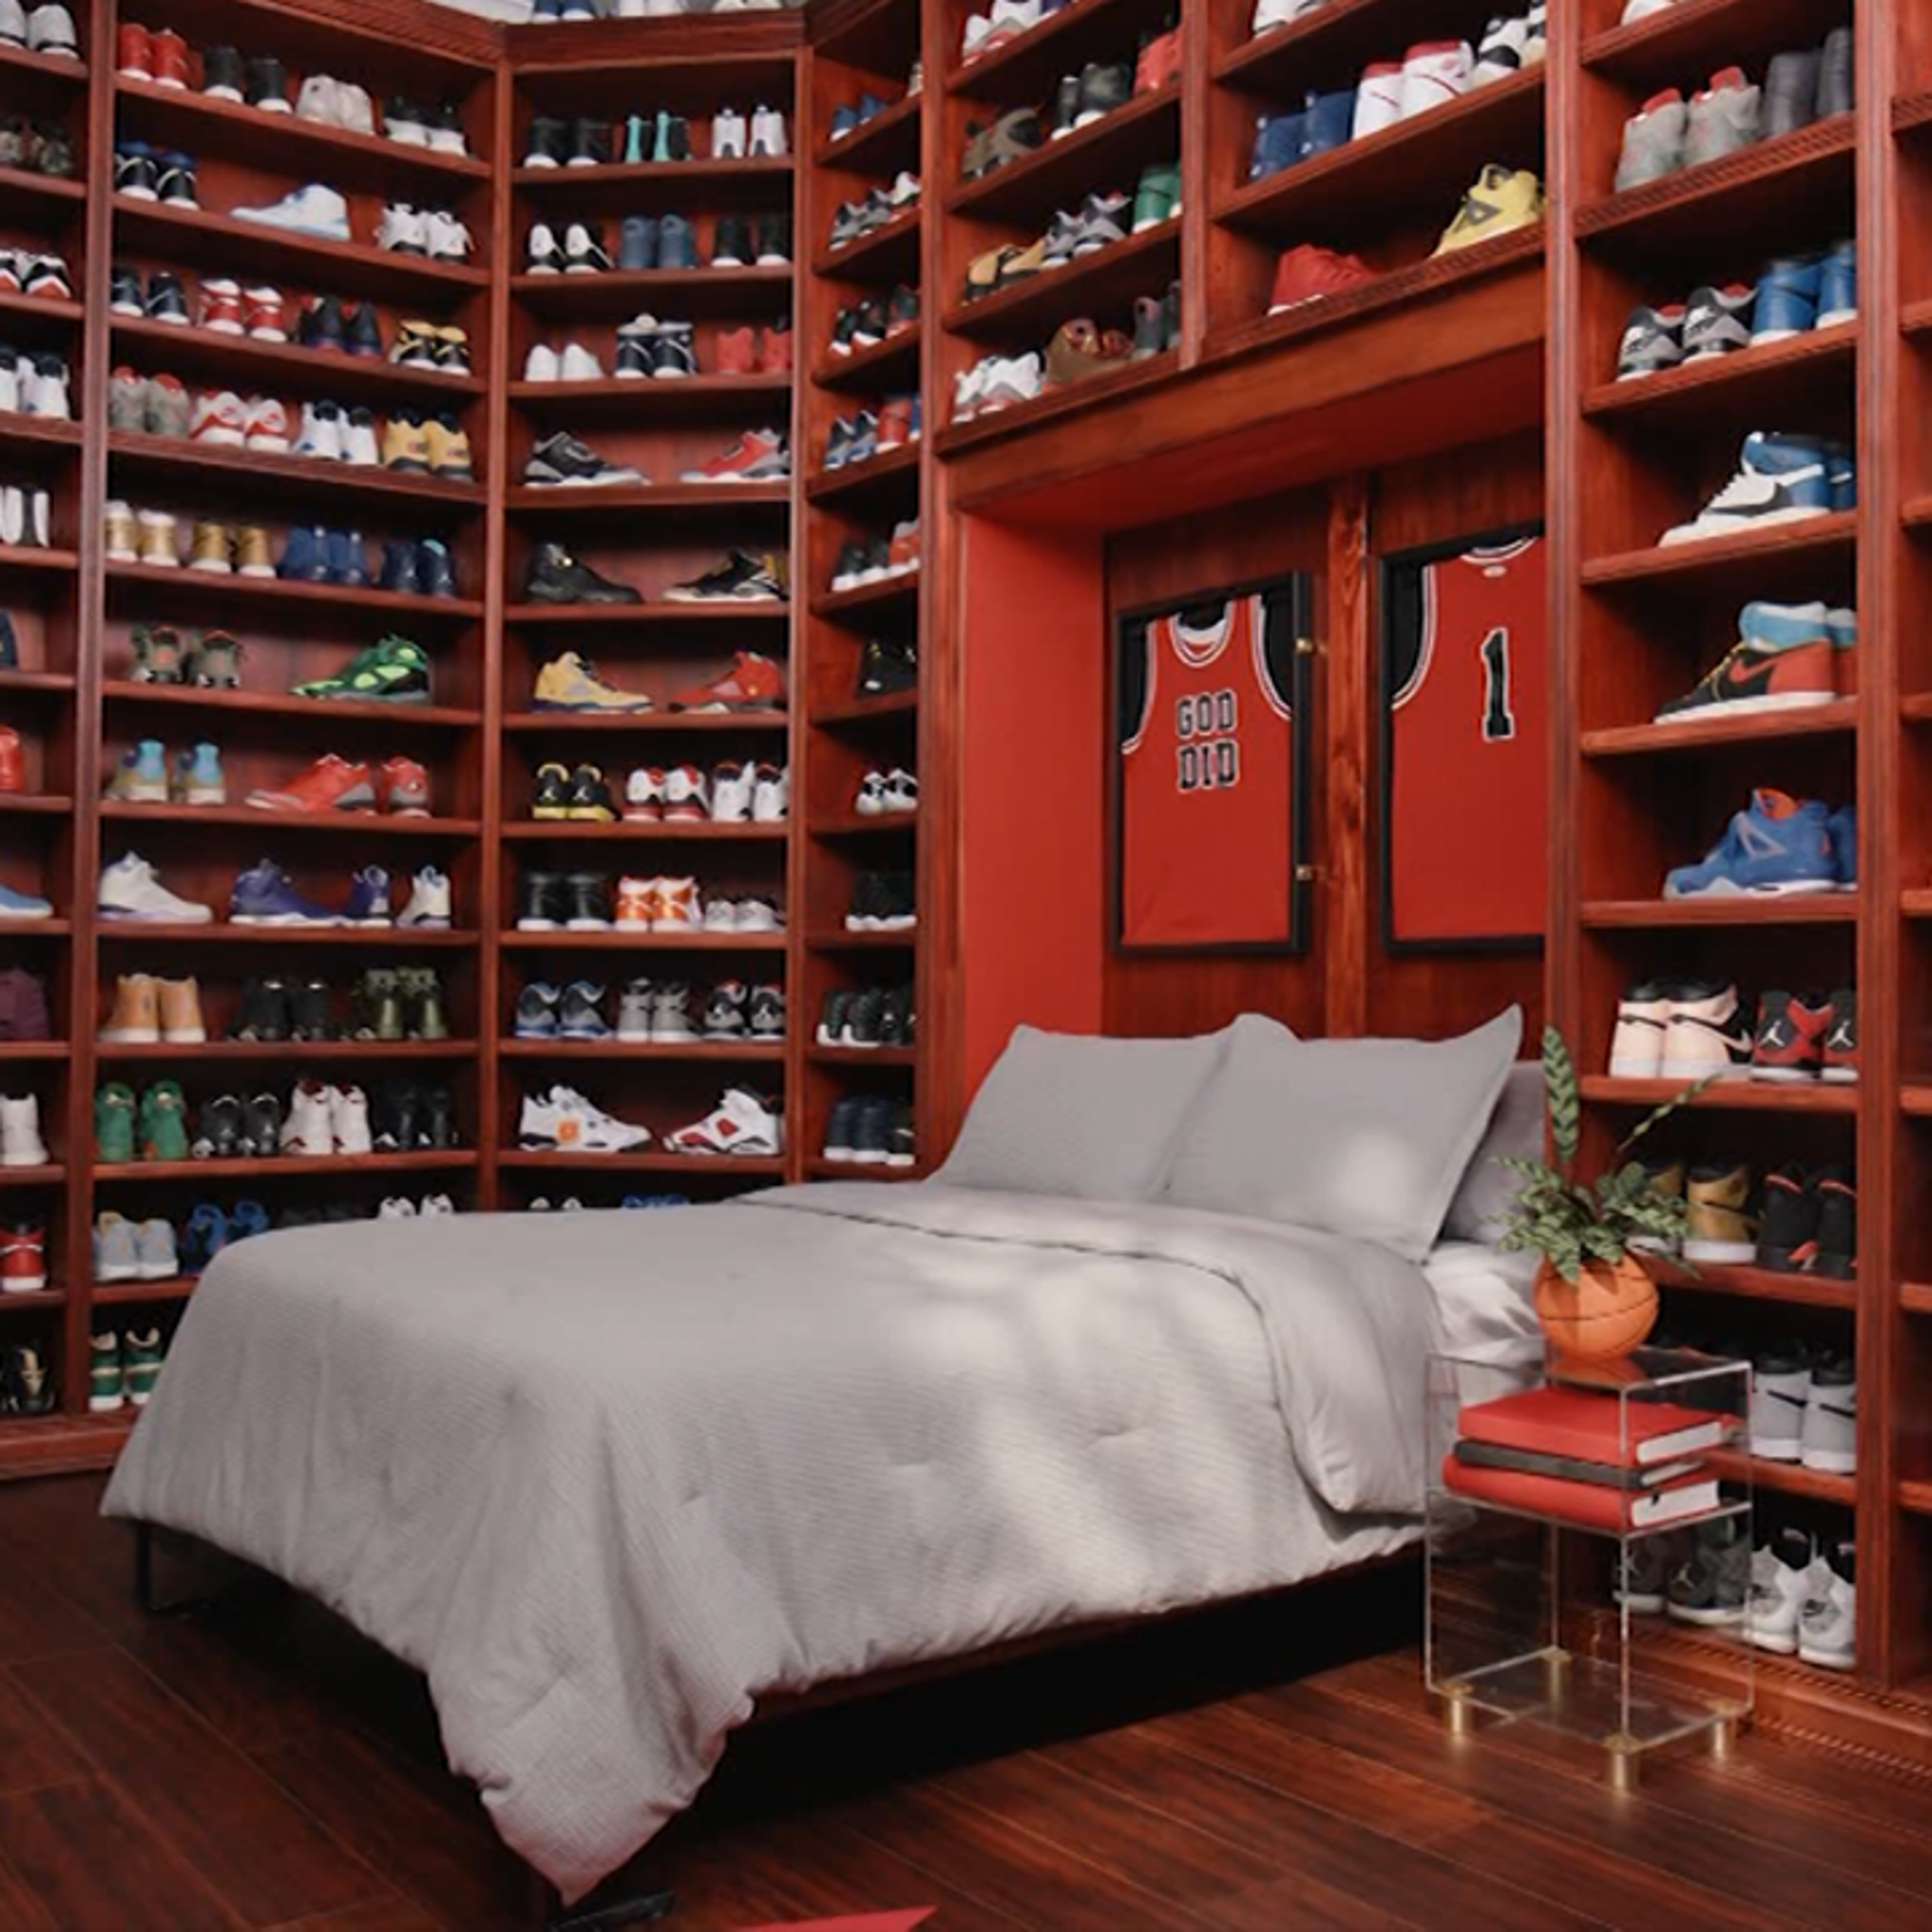 Duerme dentro del legendario armario de zapatillas de DJ Khaled en